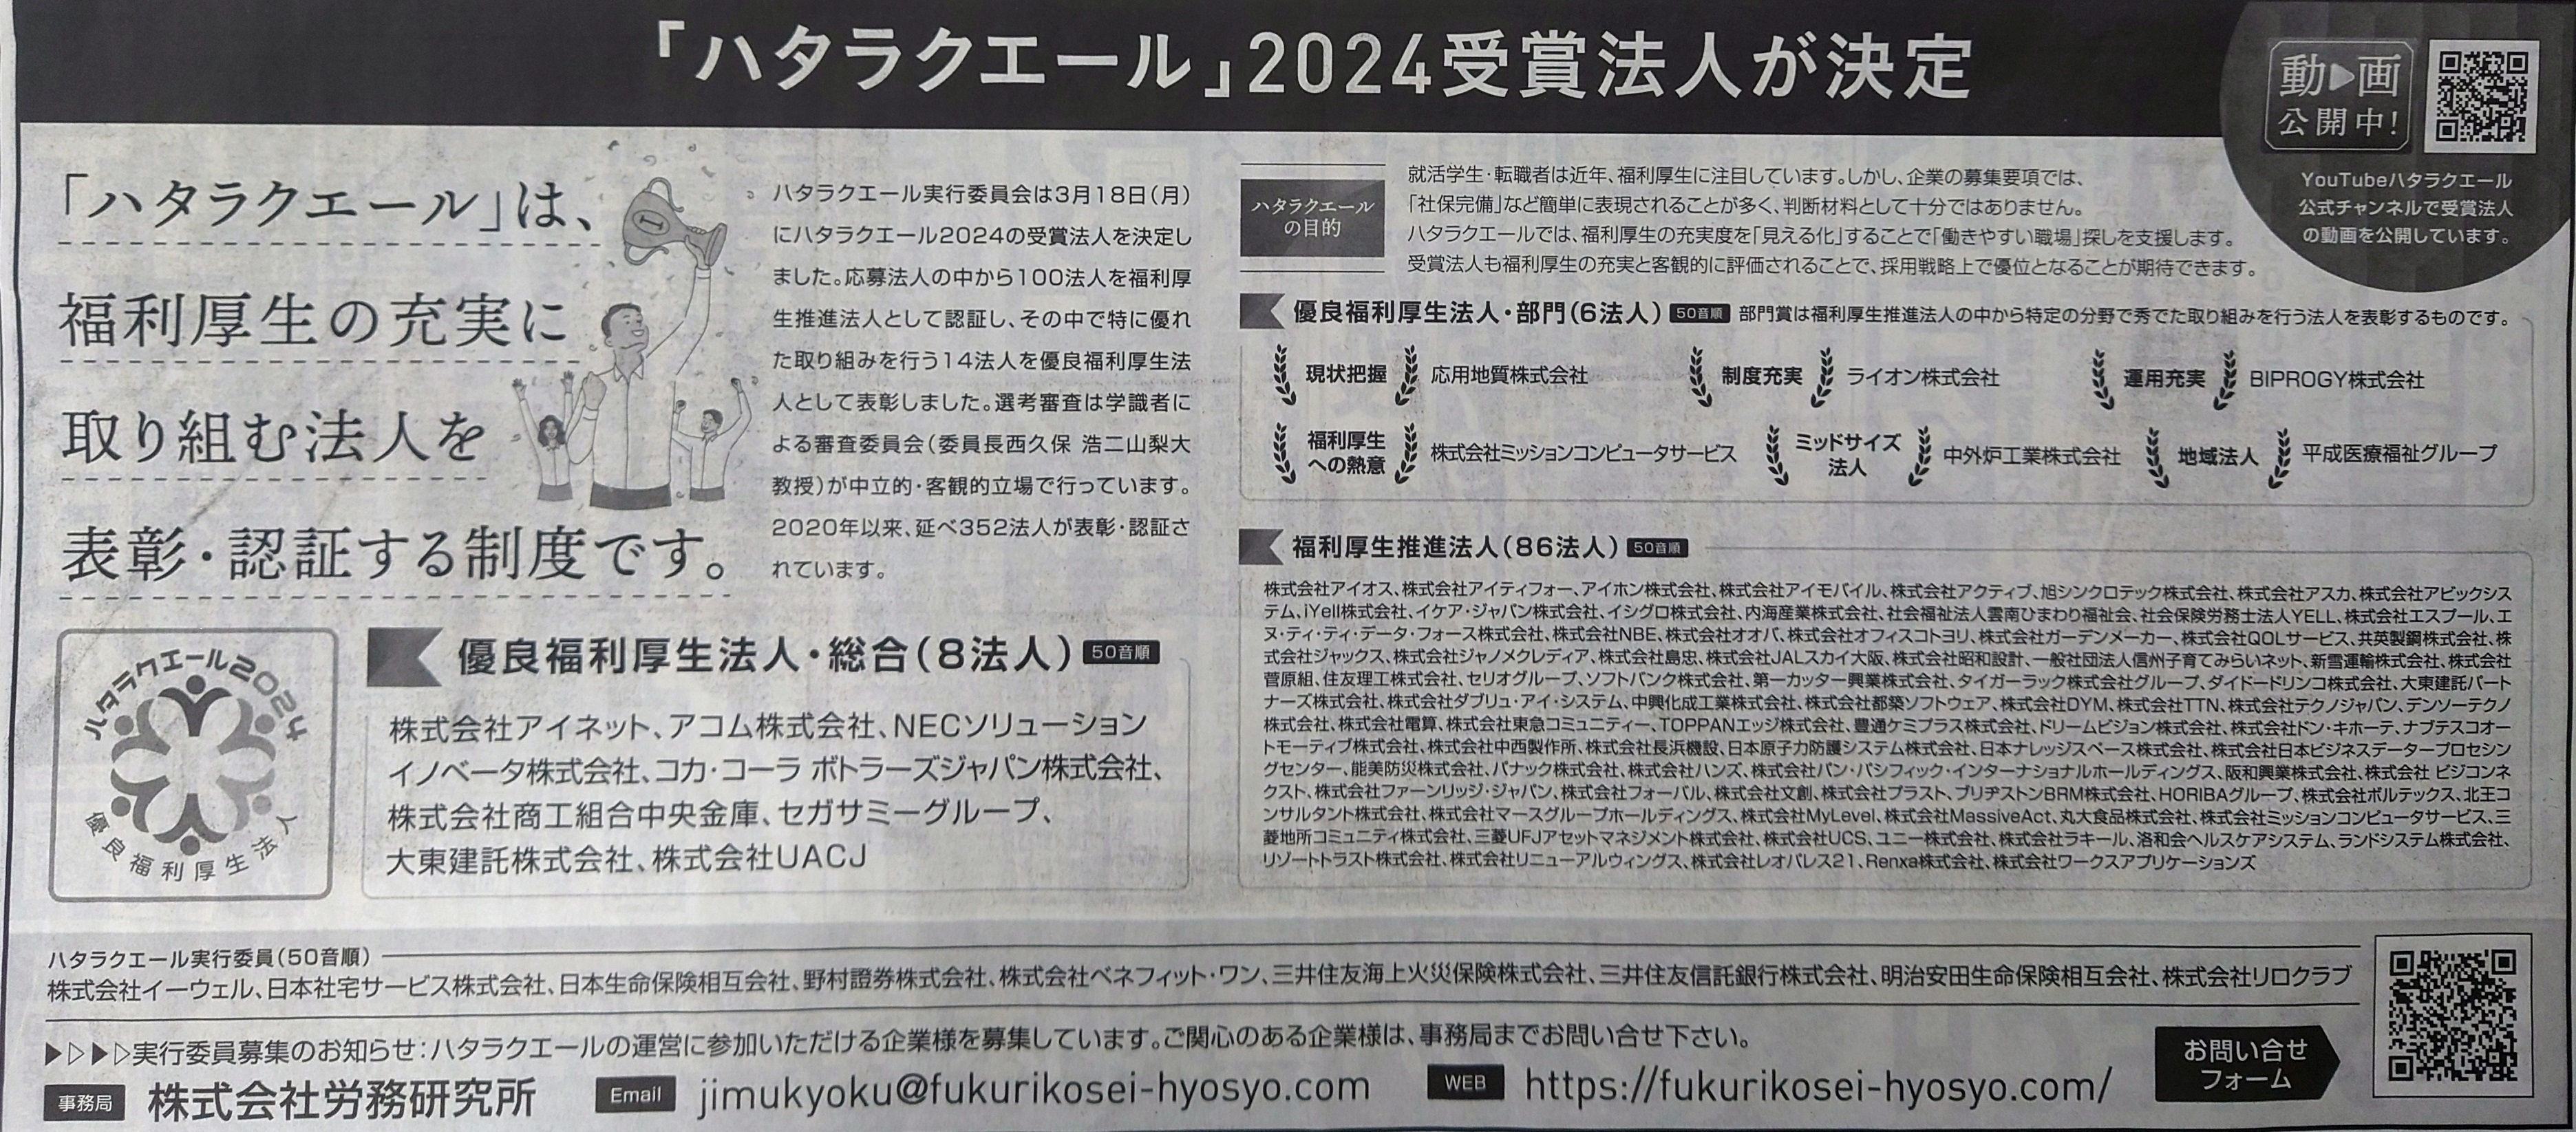 newspaper article_2024.JPG